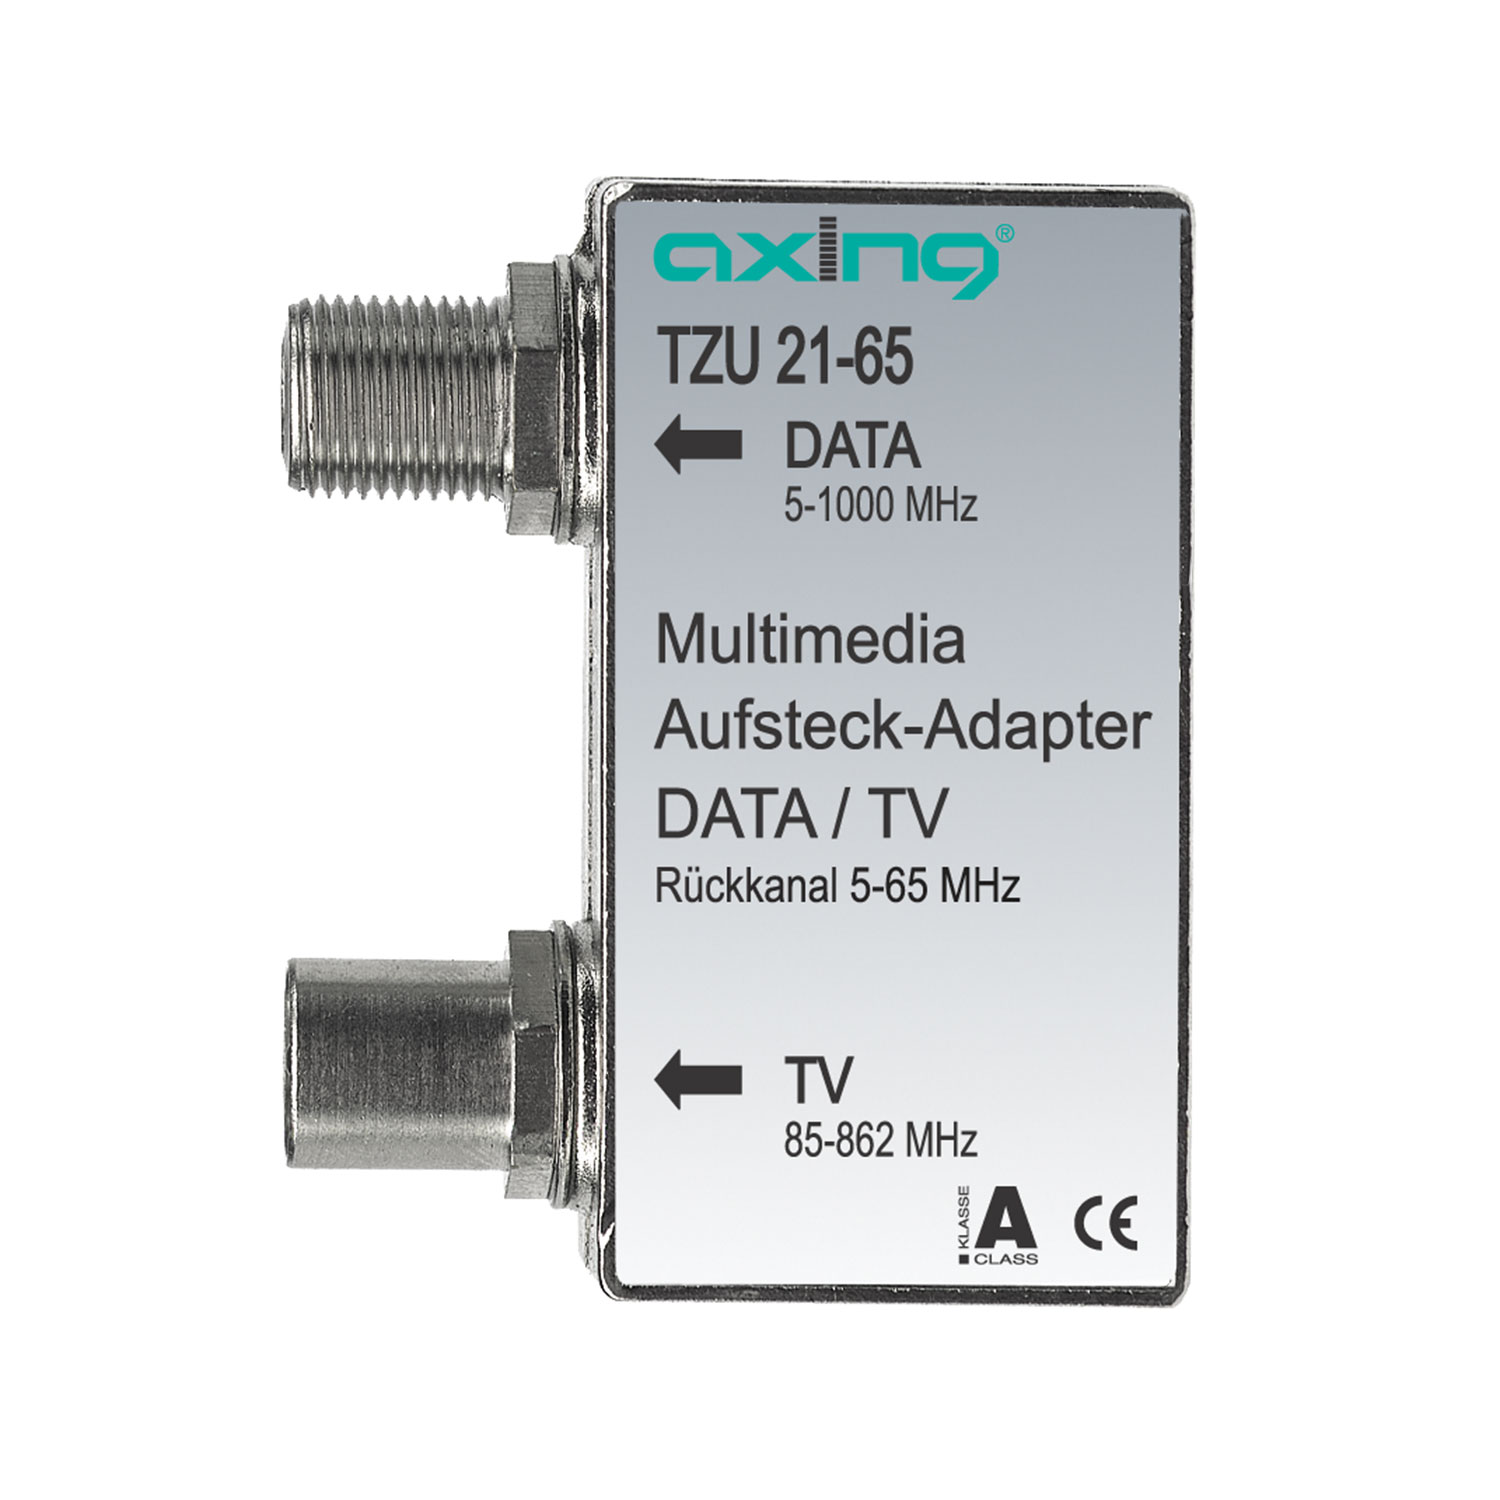 AXING TZU 21-65 Multimedia Aufsteck-Adapter für Kabelfernsehen Verteiler DATA/TV